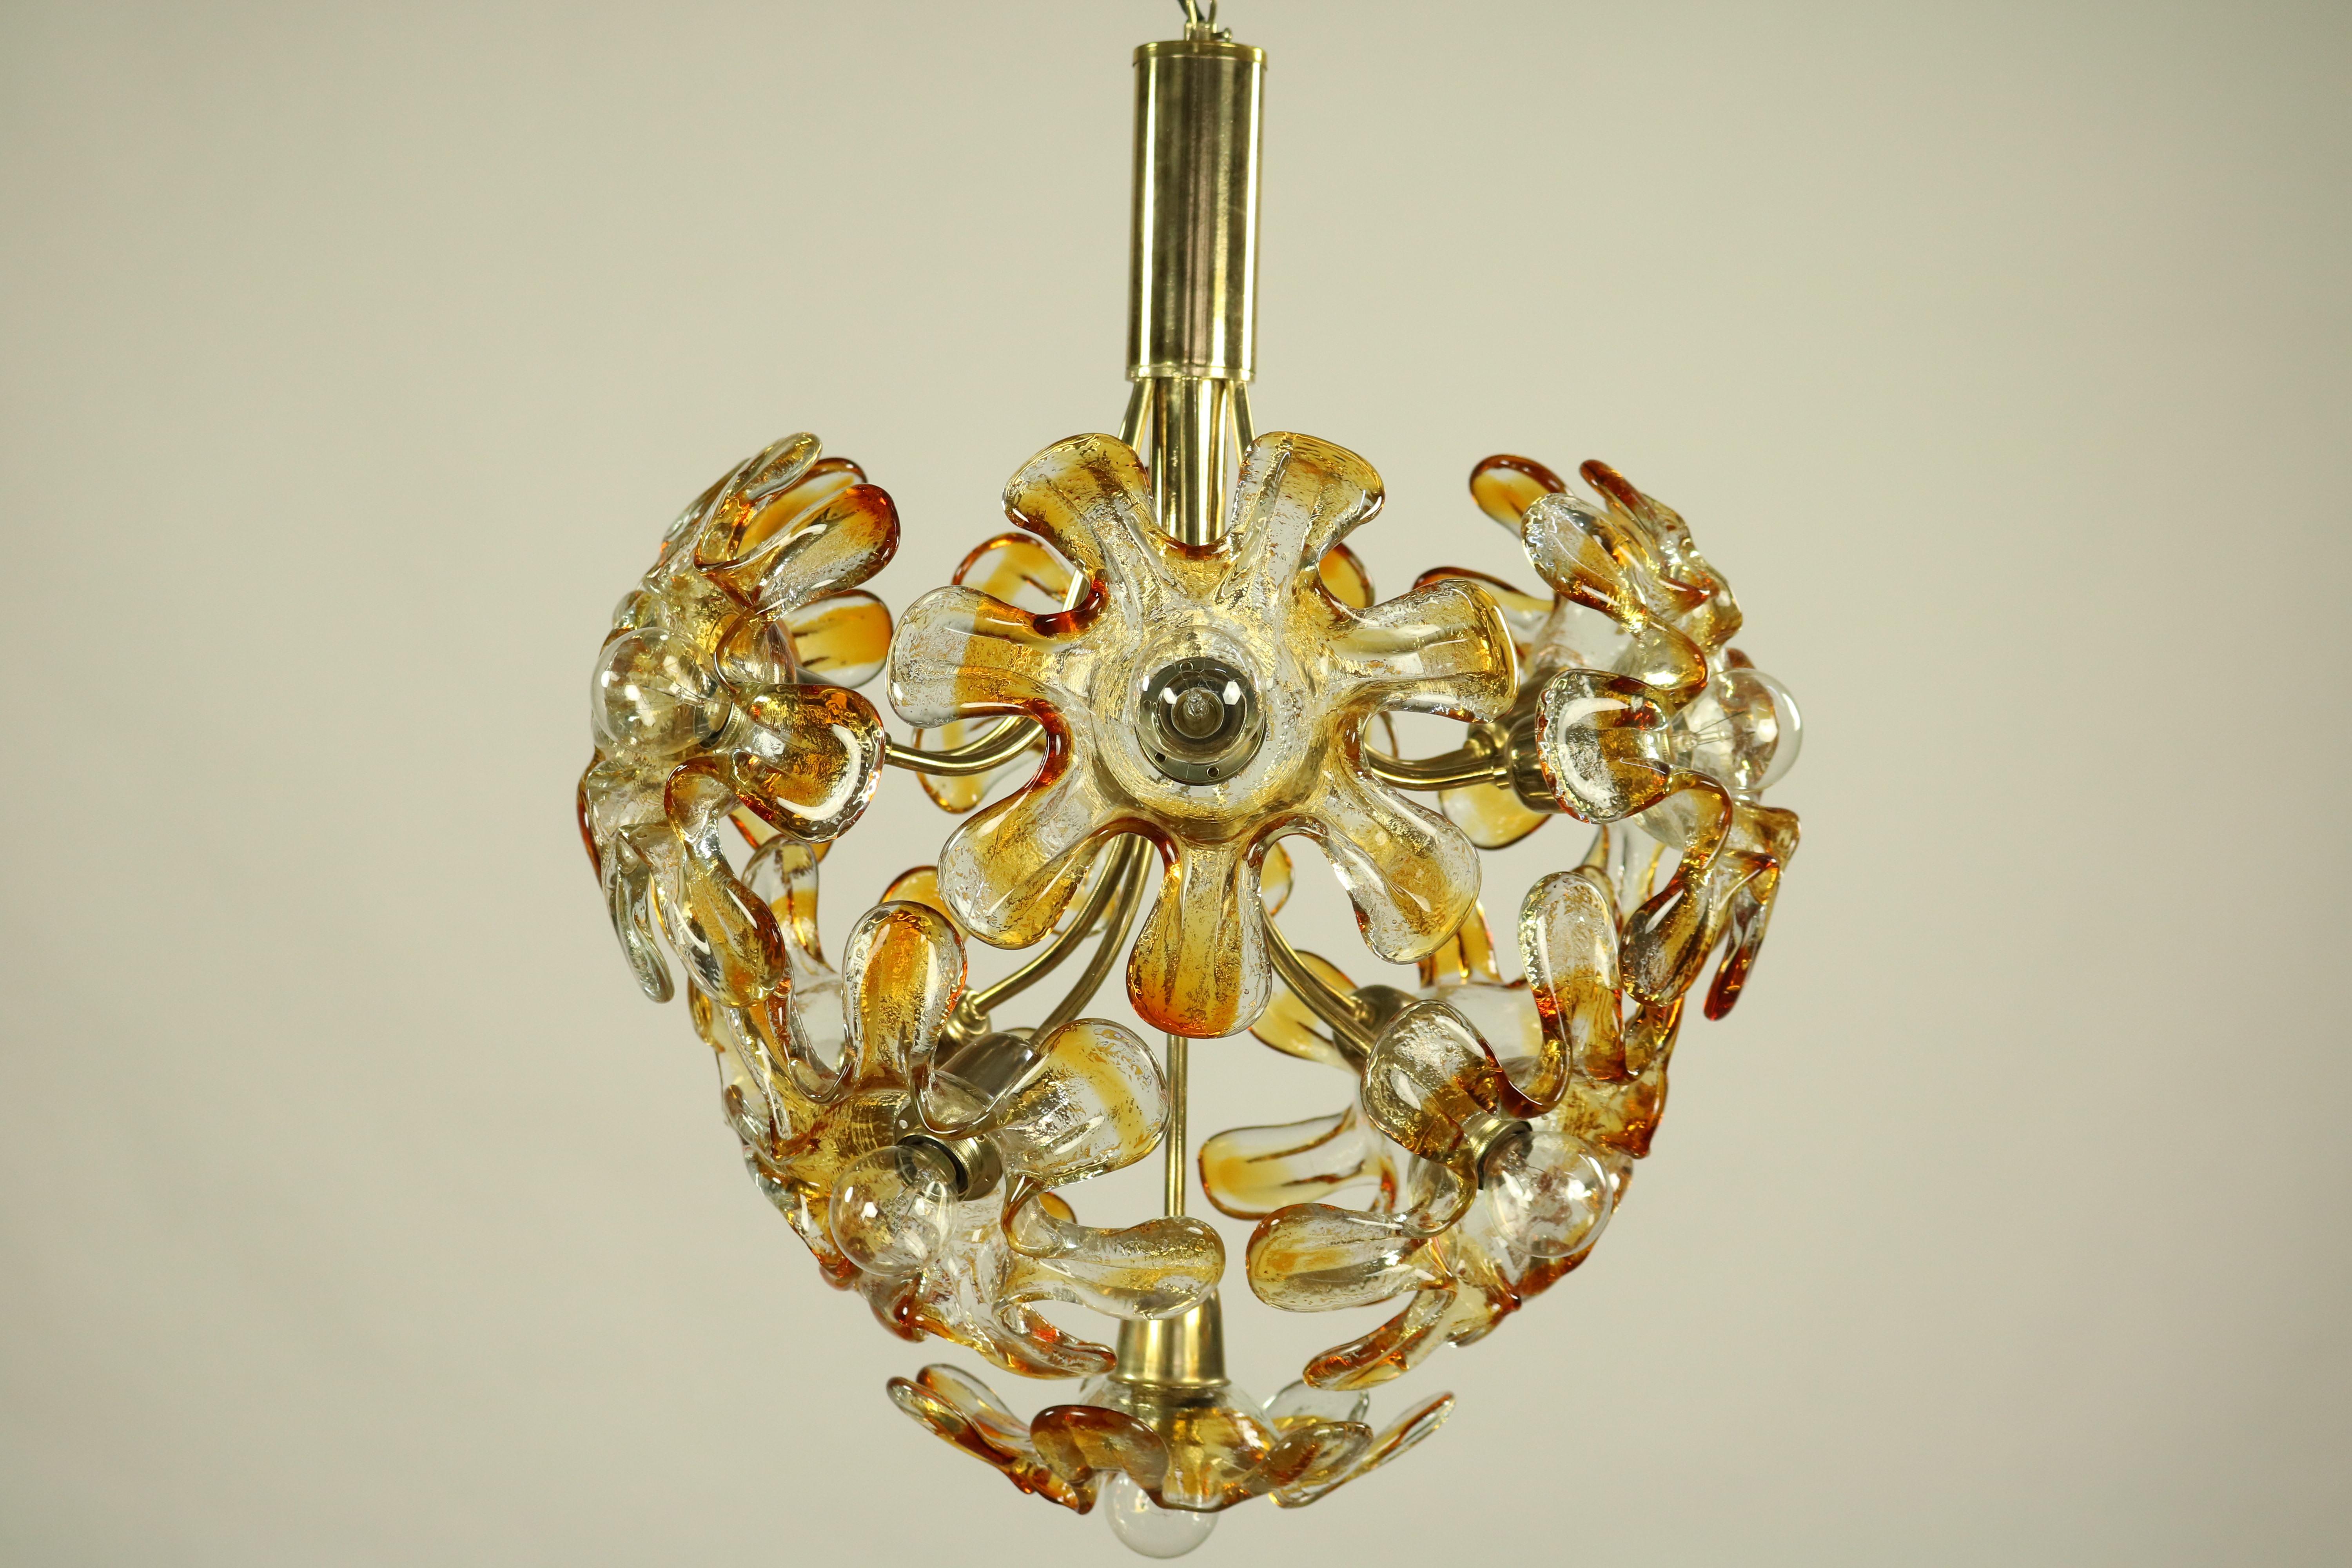 Blown Glass Mazzega Murano Glass Flower or Blossom Chandelier 11 Light Pendant Lamp For Sale